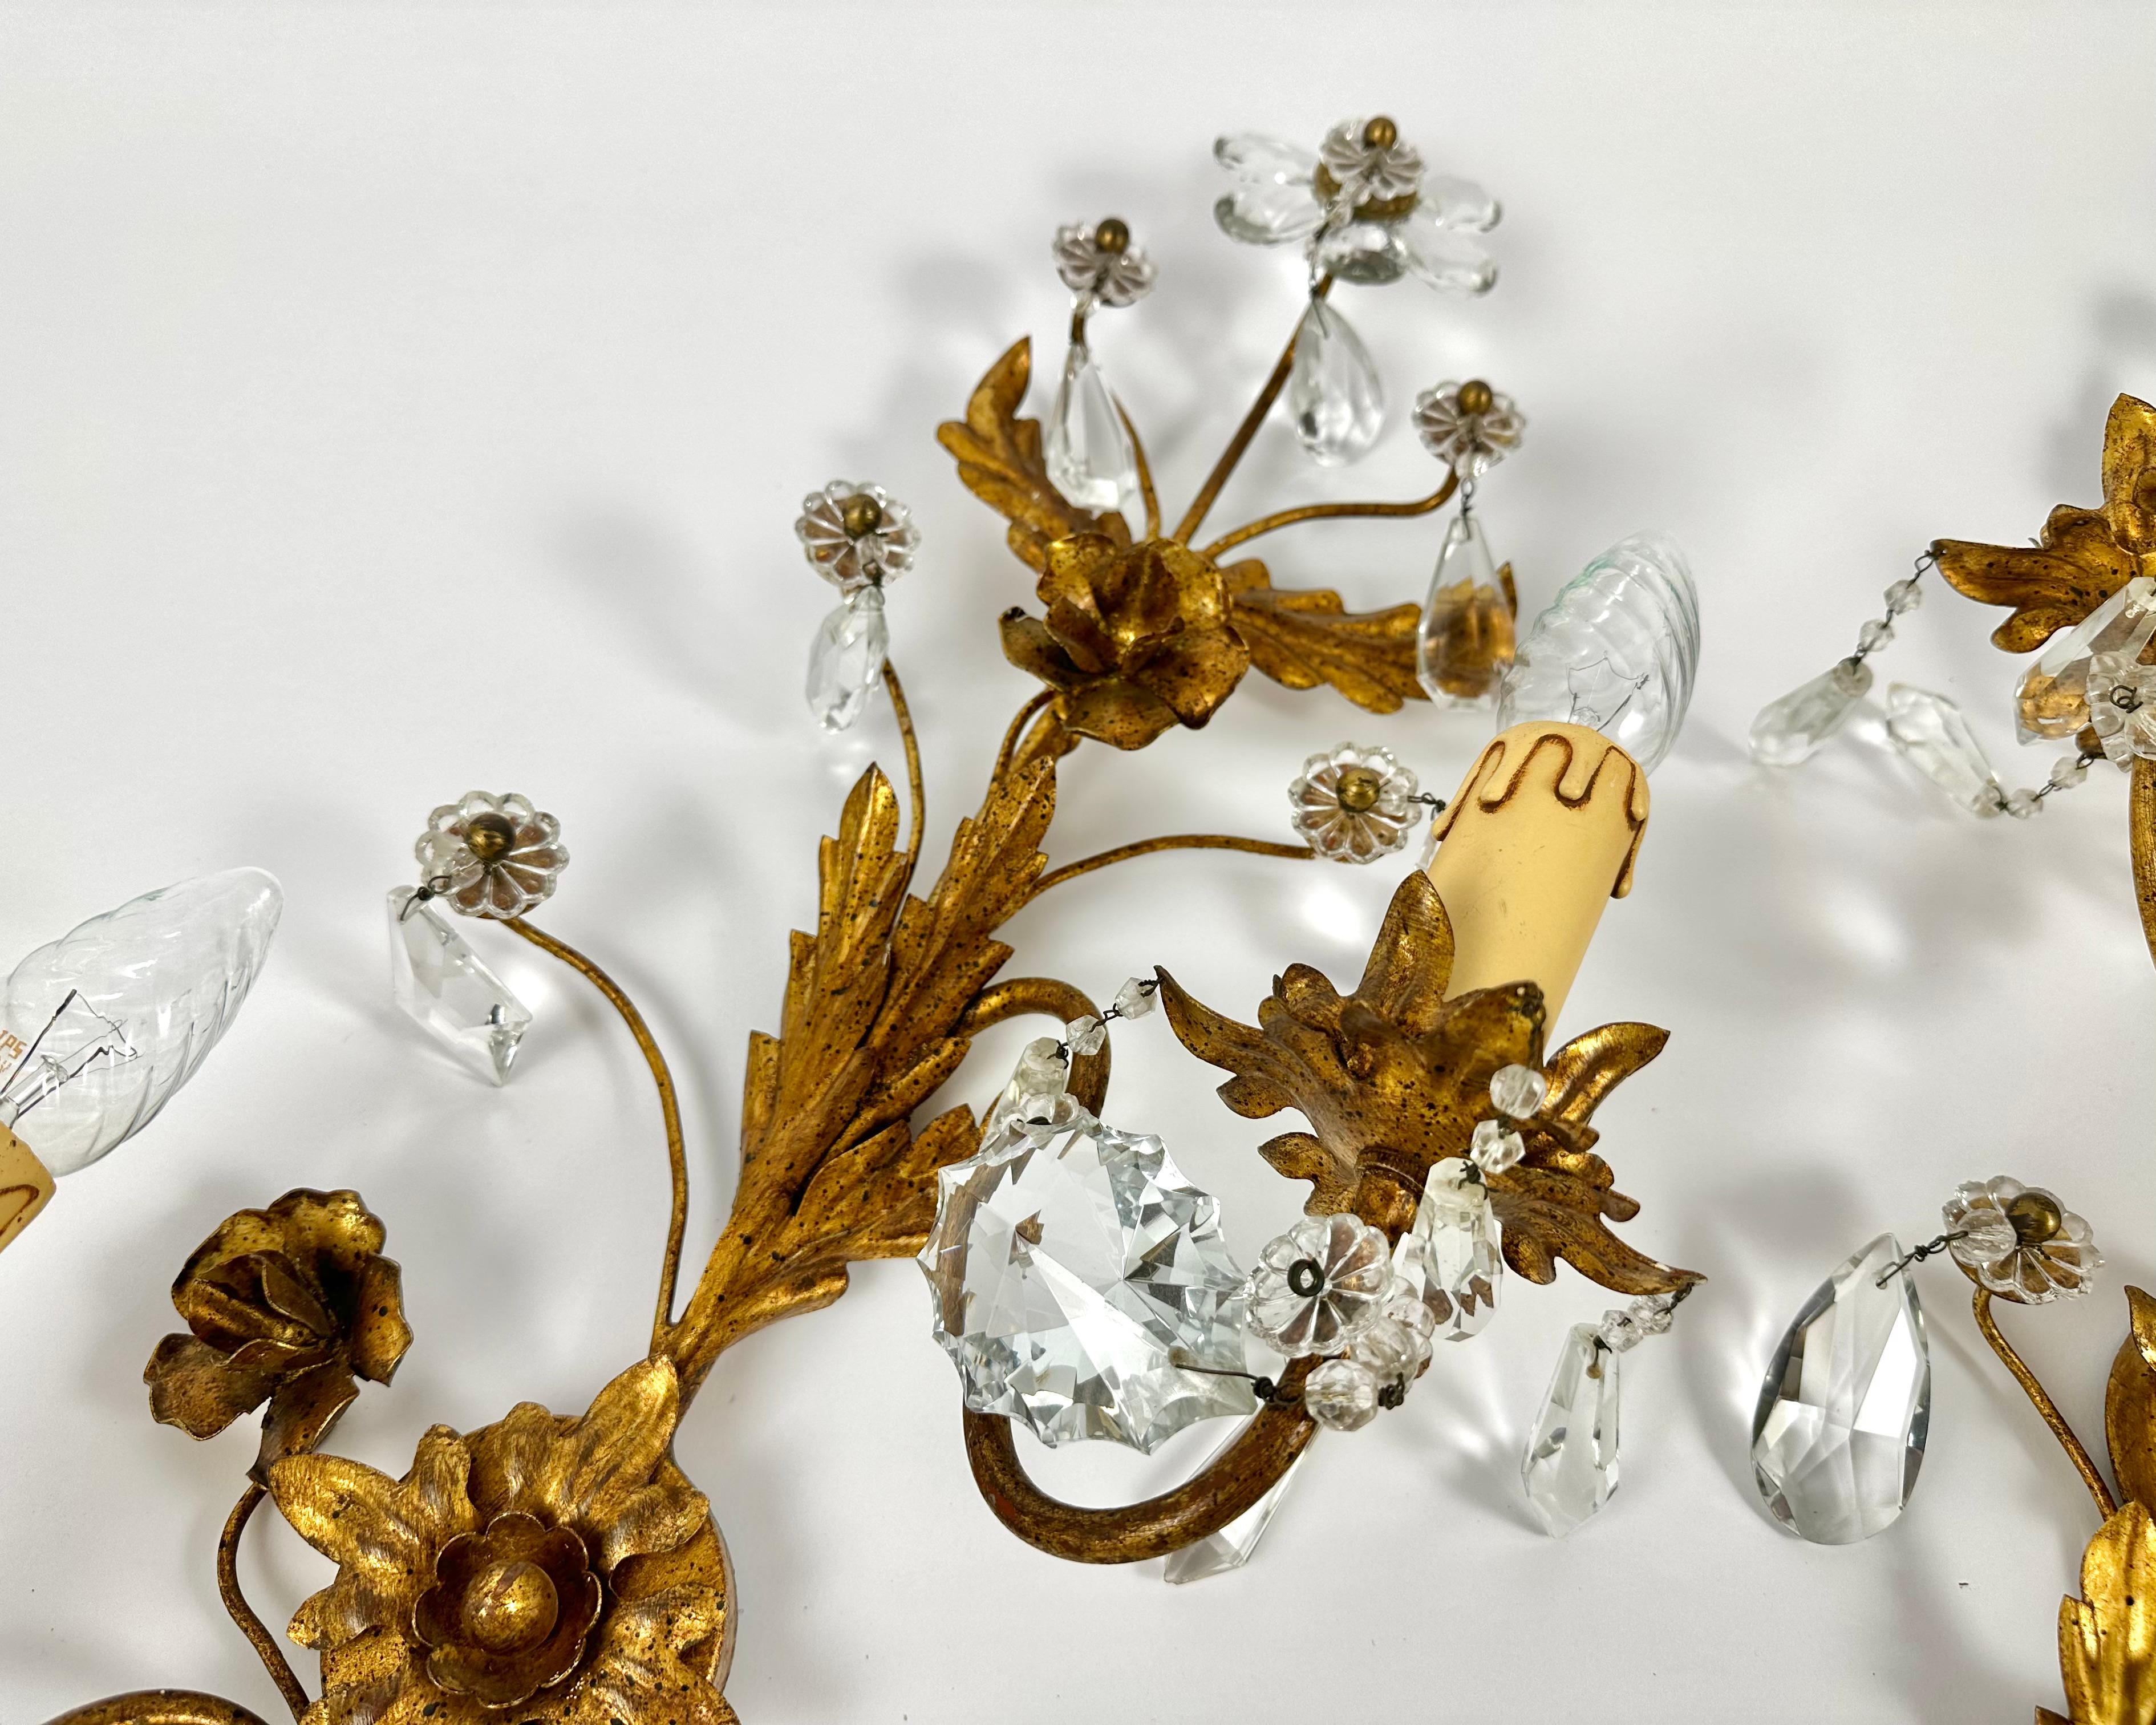 Magnifiques grandes appliques Florentine des années 1950, avec deux bases sur chacune d'elles, présentant des fleurs de marguerite en cristal et des feuilles incurvées dorées.

Fabriqué en Italie.

Très belle conception avec beaucoup de détails et